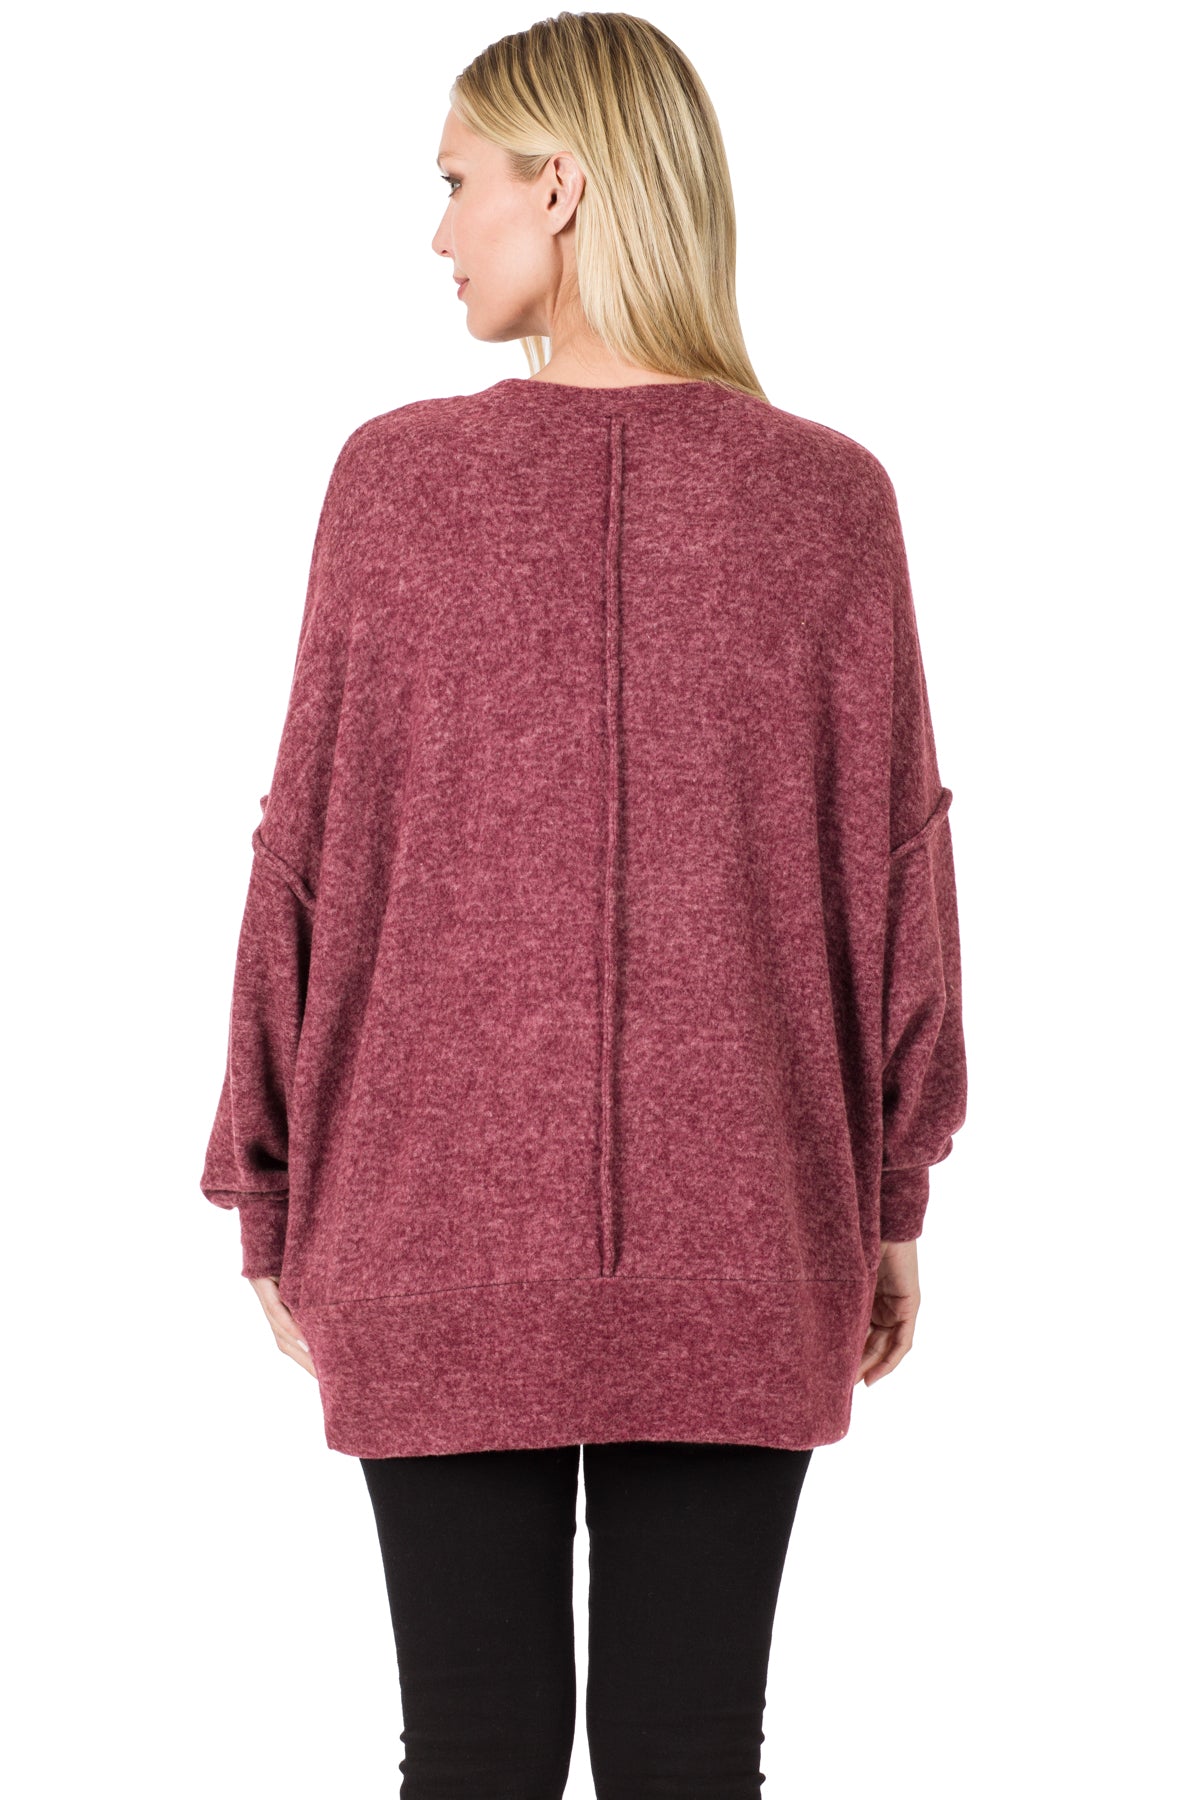 Zenana Brushed Melange Hacci Oversized Hi-low Hem Soft Sweater